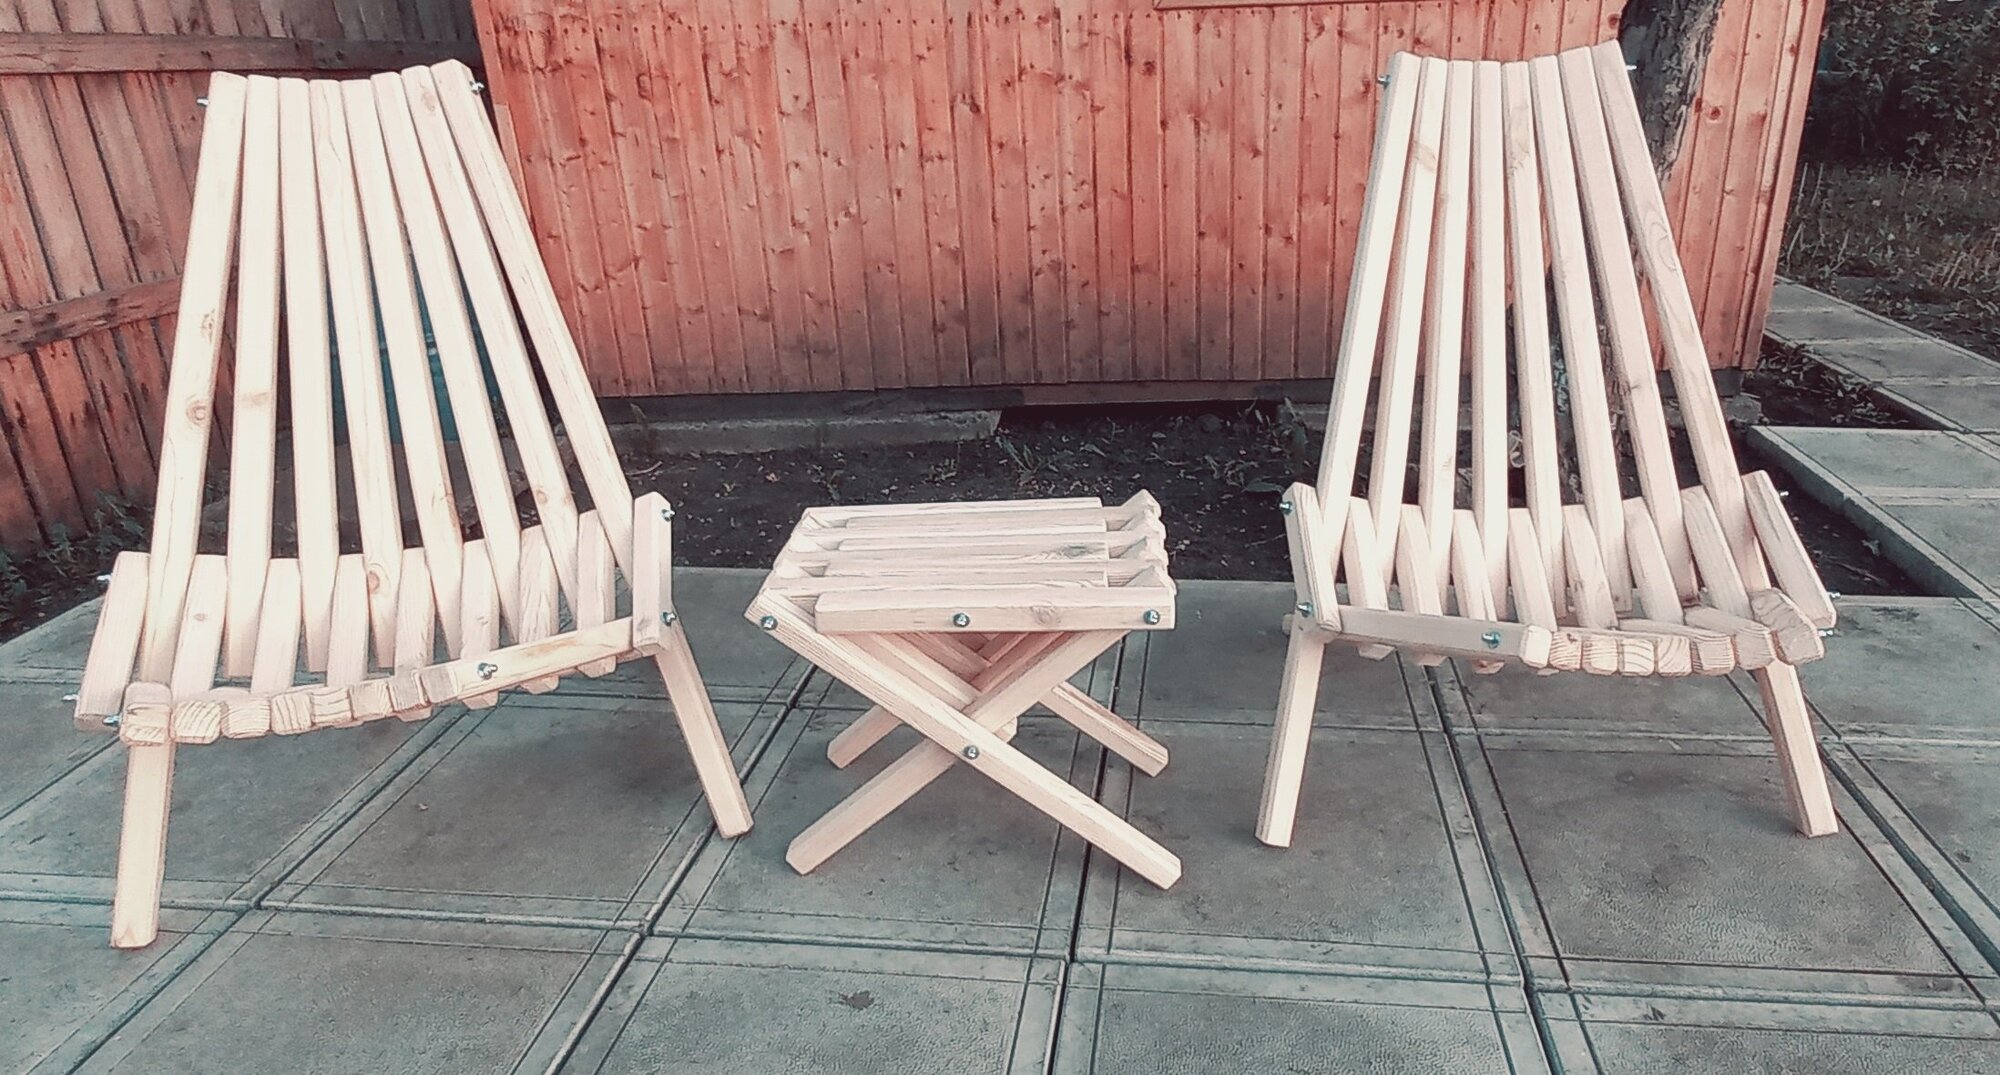 Комплект Кентукки 2 садовых кресла на шпильке и 1 журнальный столик(табурет), цвет сосна